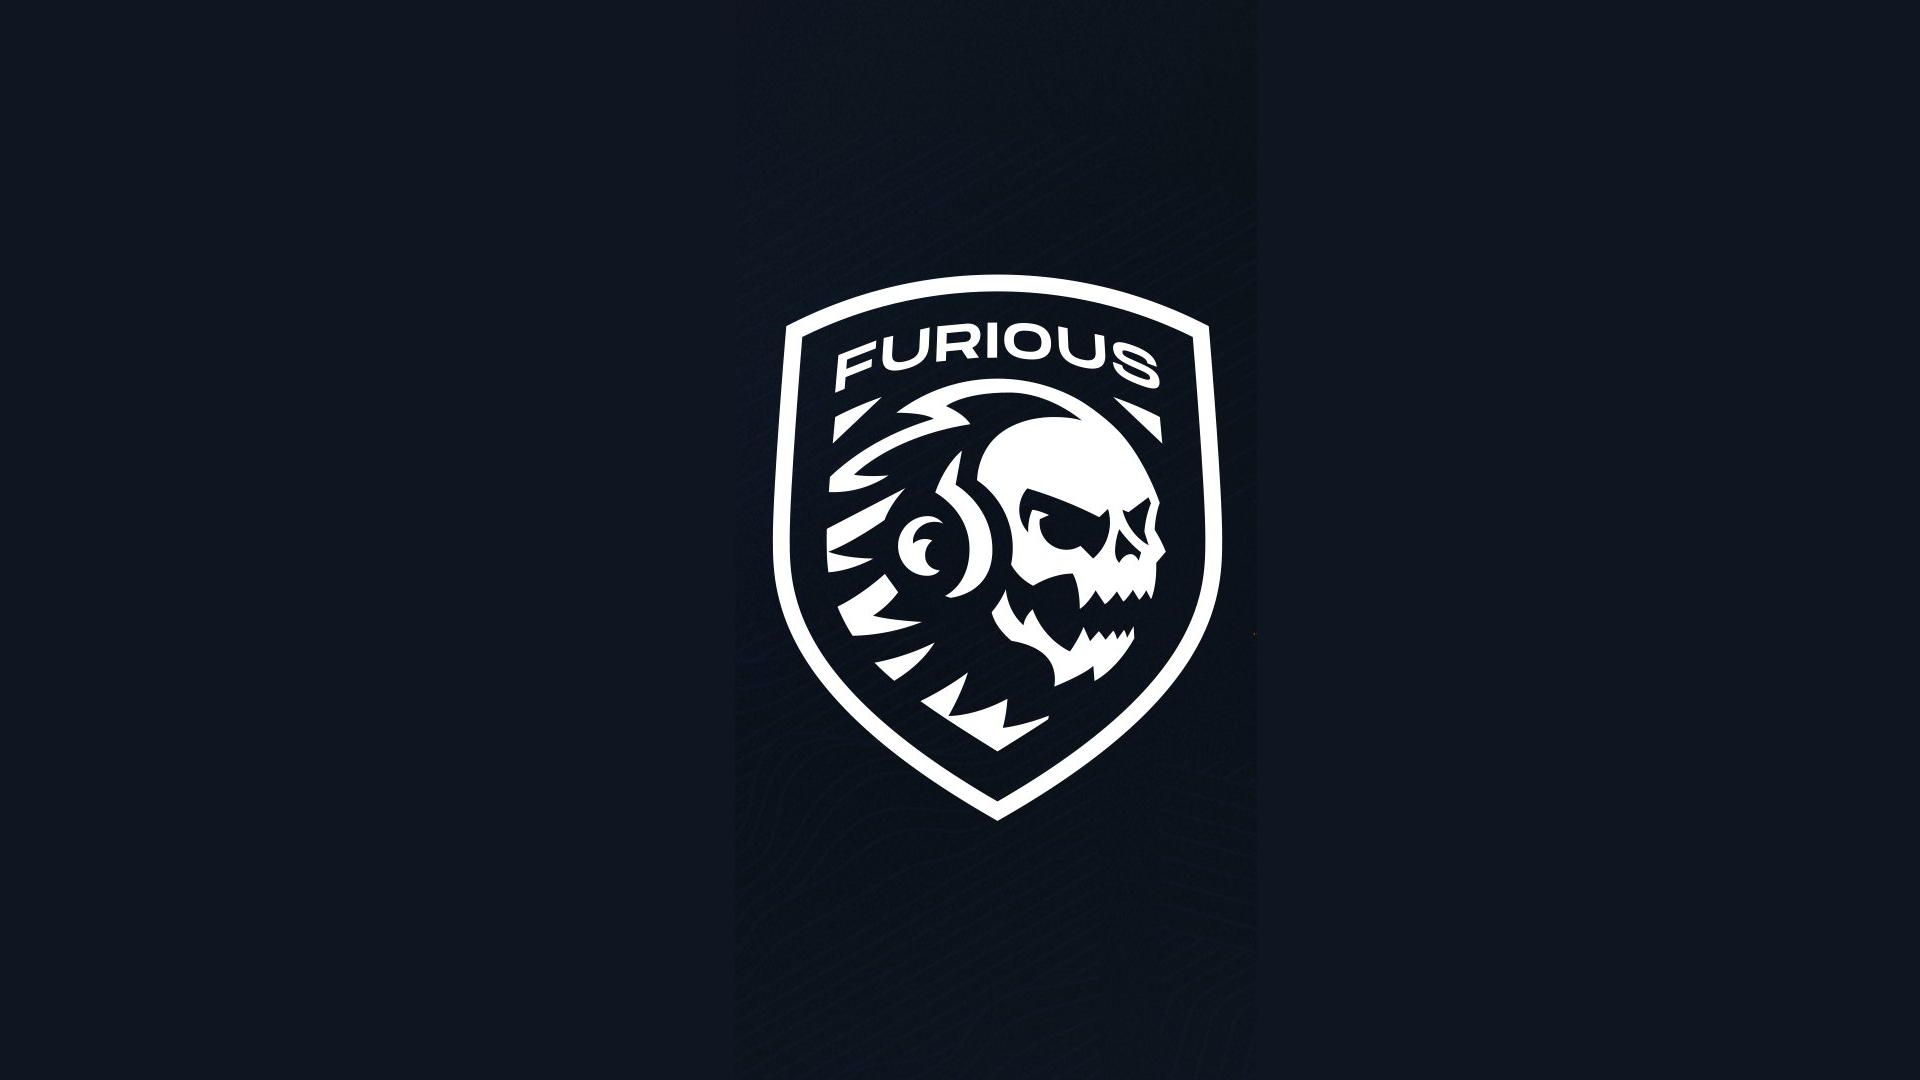 Furious Gaming confirma el contagio de COVID-19 en parte de su equipo de  League of Legends - GodMode